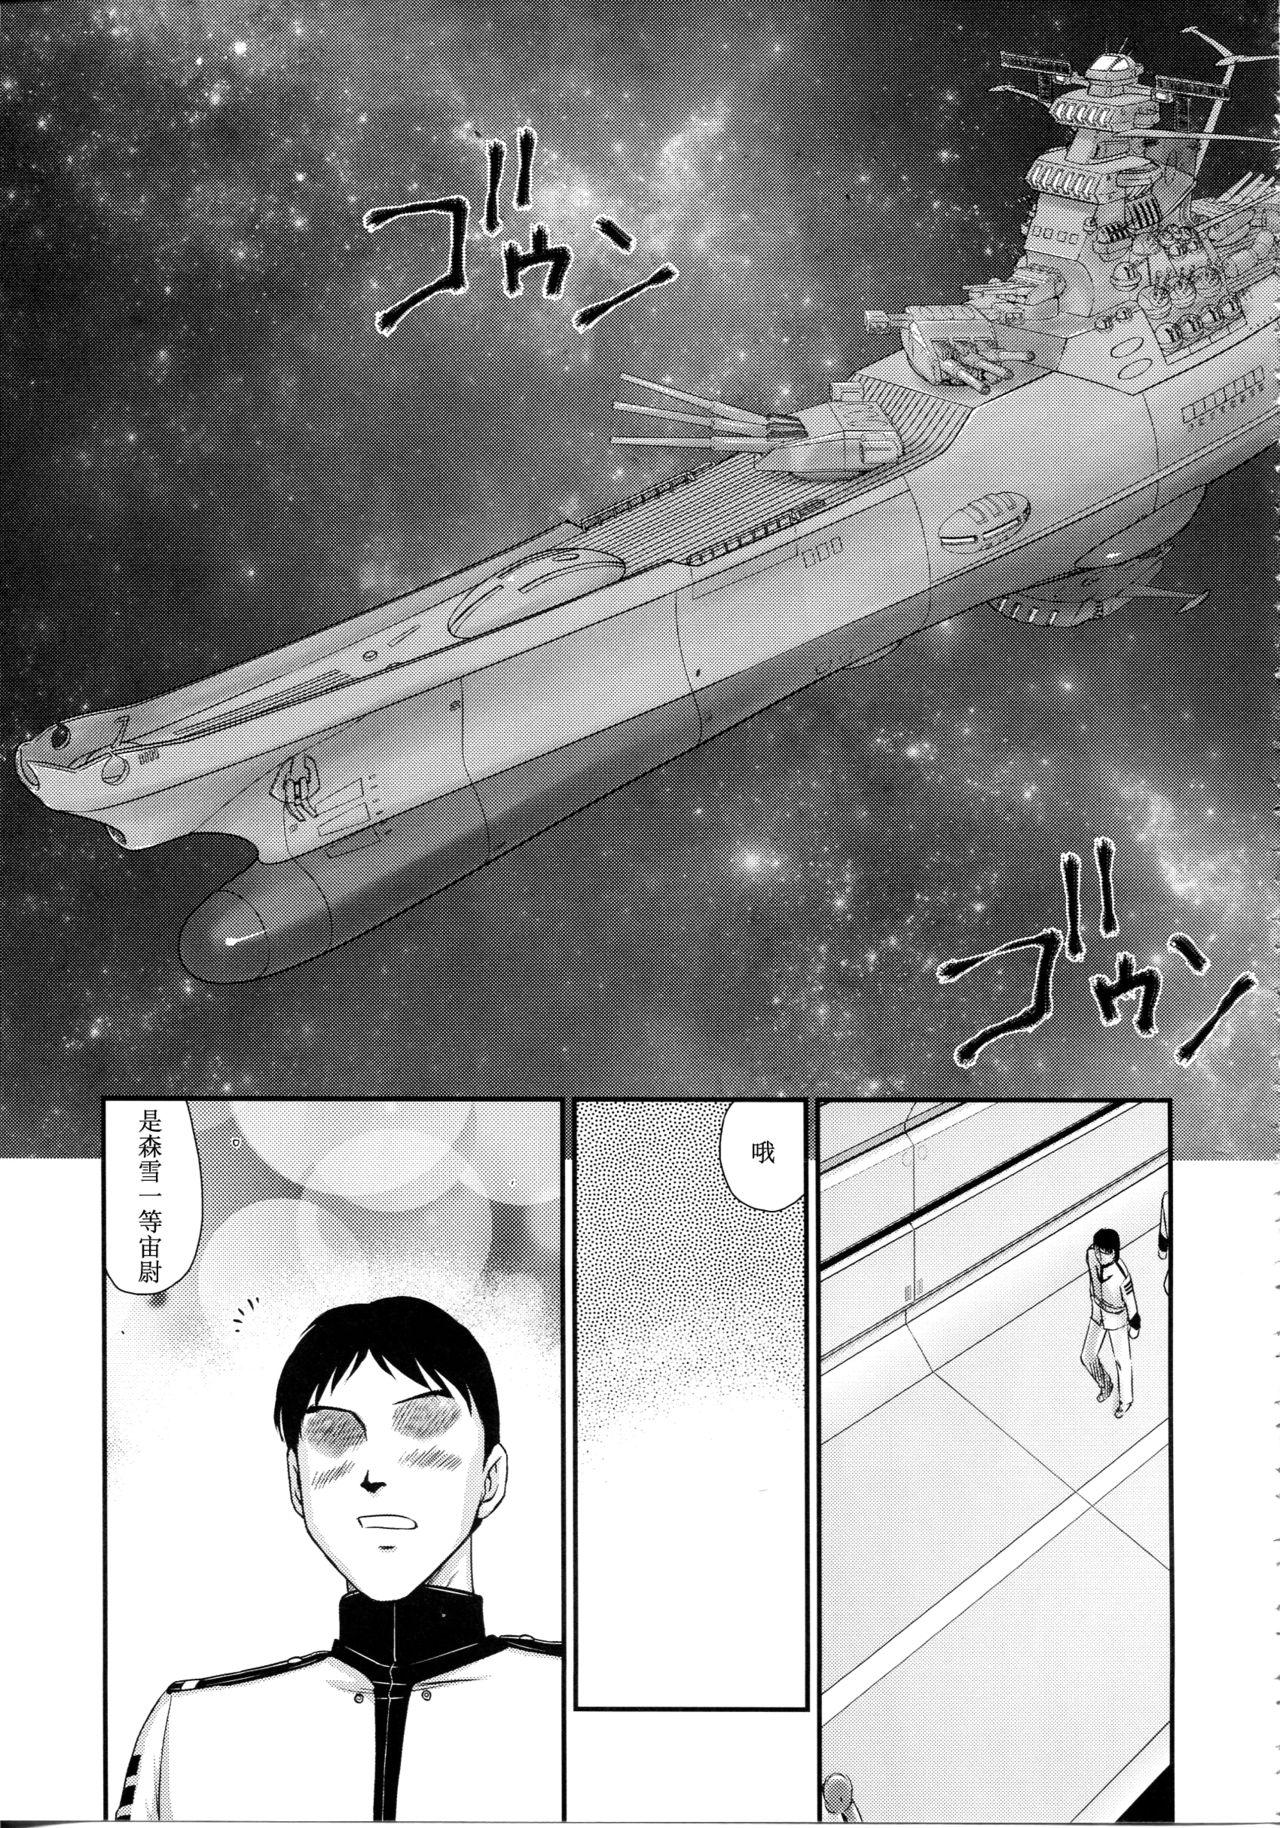 Swing Yuki no Shizuku - Space battleship yamato 2199 Kinky - Page 10